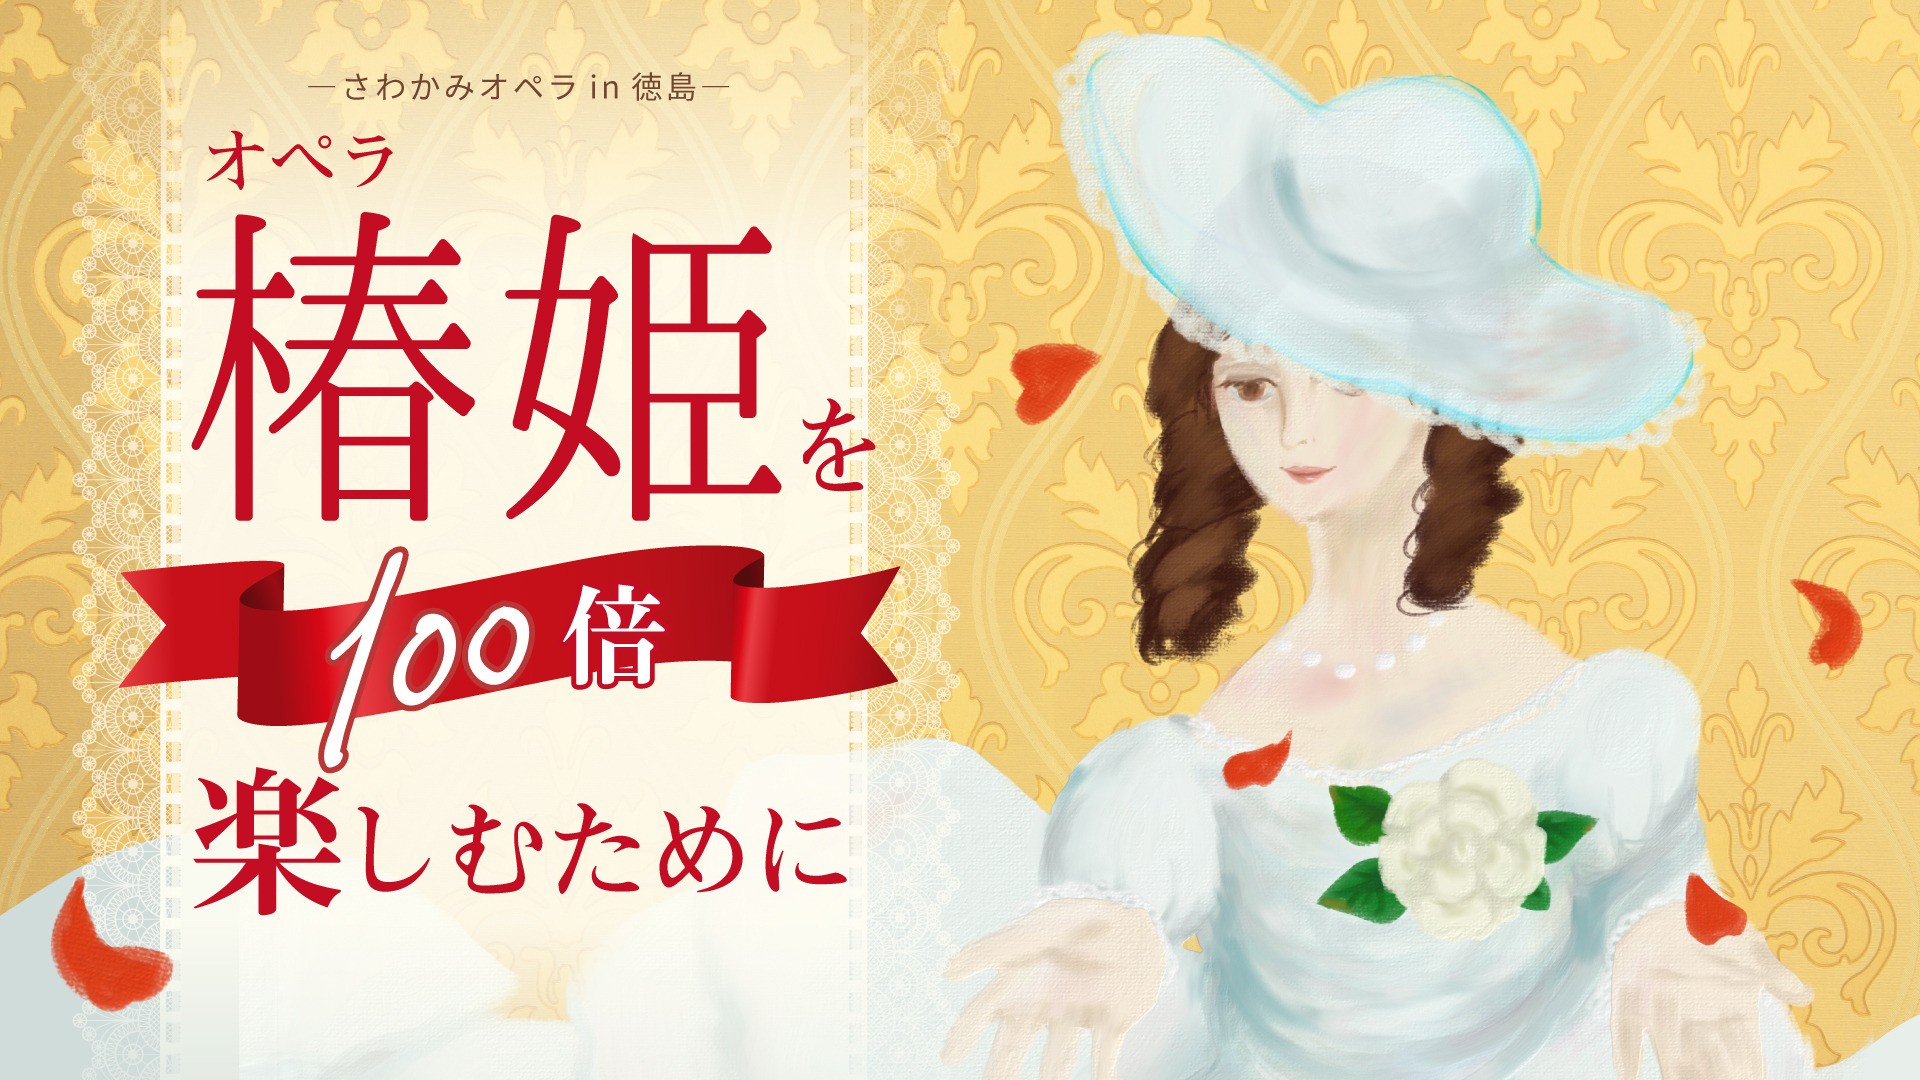 【チケット販売情報】徳島・鴨島公演オペラ「椿姫」を100倍楽しむために